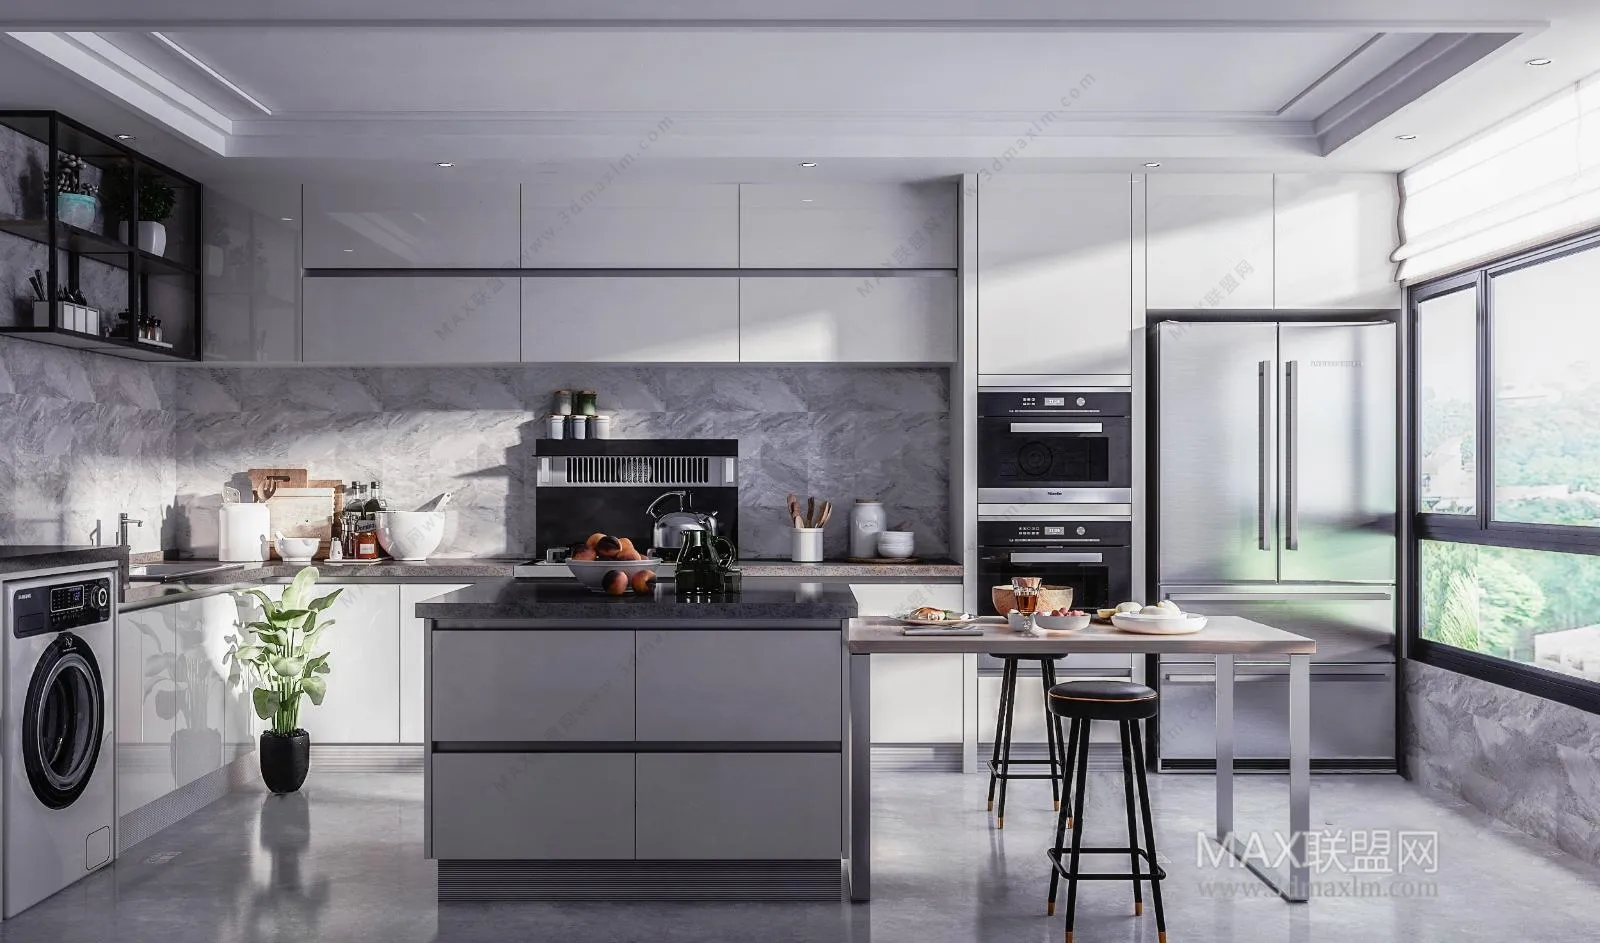 Kitchen – Interior Design – Modern Design – 002